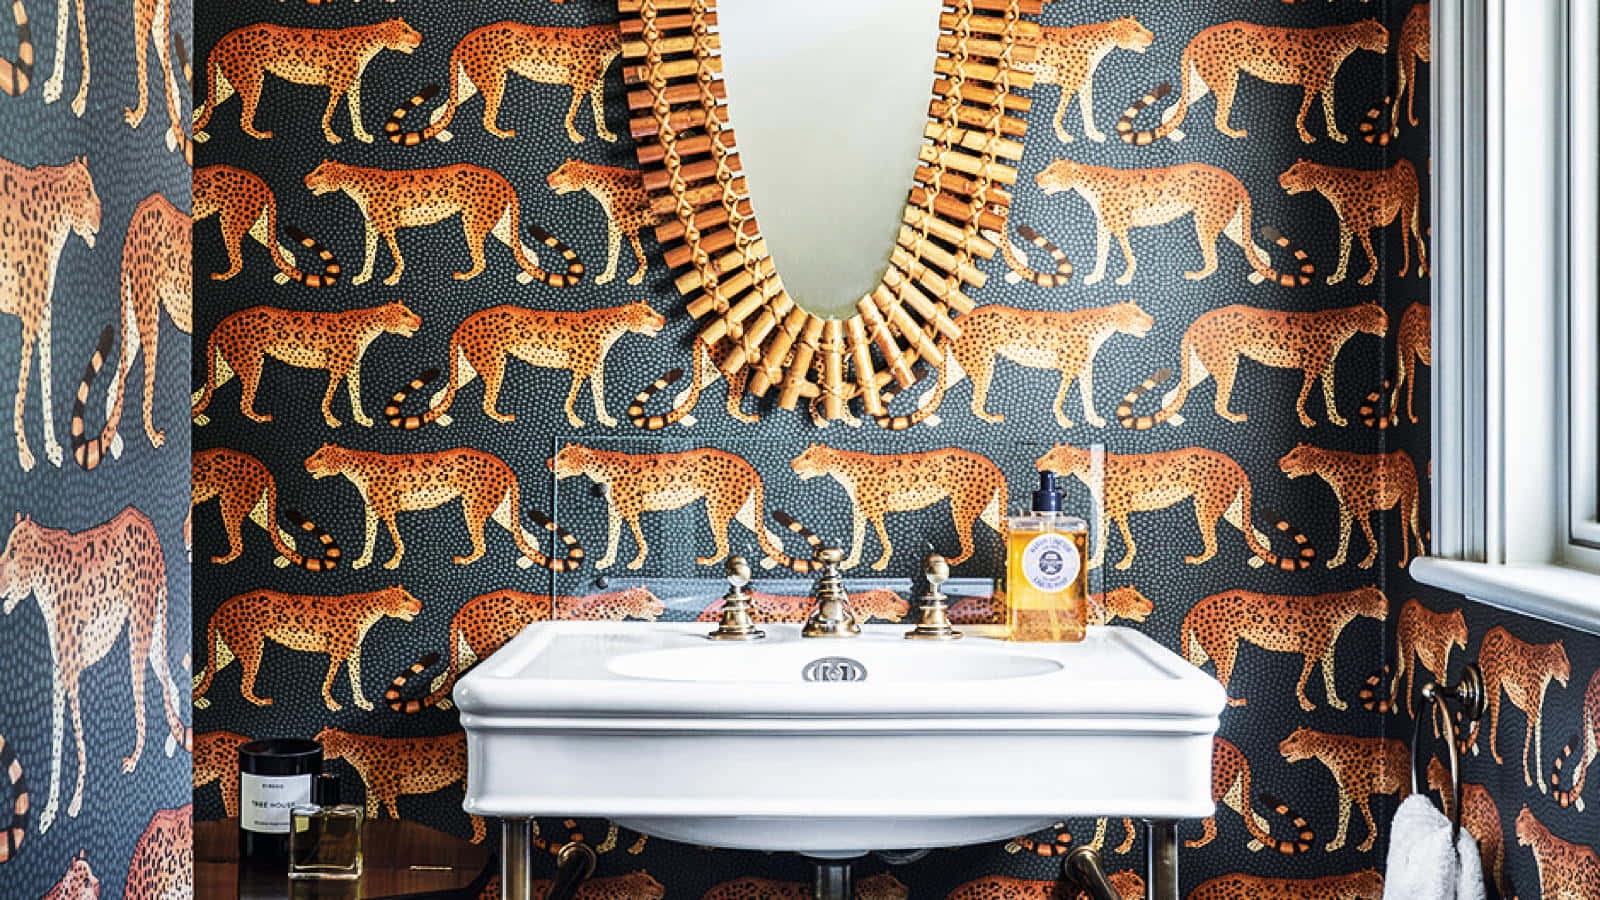 A Bathroom With Cheetah Print Wallpaper